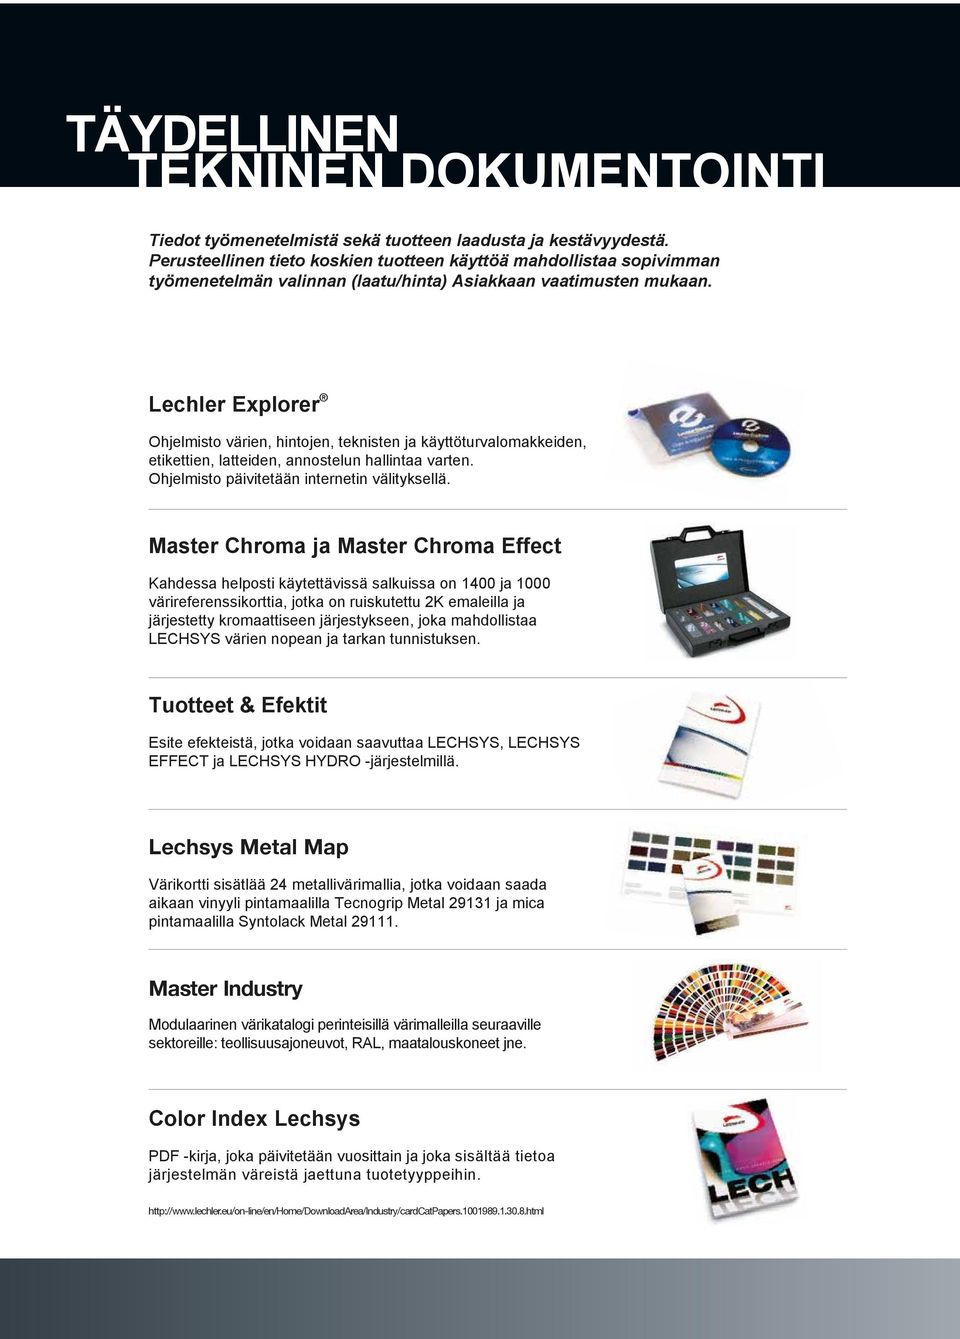 Lechler Explorer Ohjelmisto värien, hintojen, teknisten ja käyttöturvalomakkeiden, etikettien, latteiden, annostelun hallintaa varten. Ohjelmisto päivitetään internetin välityksellä.